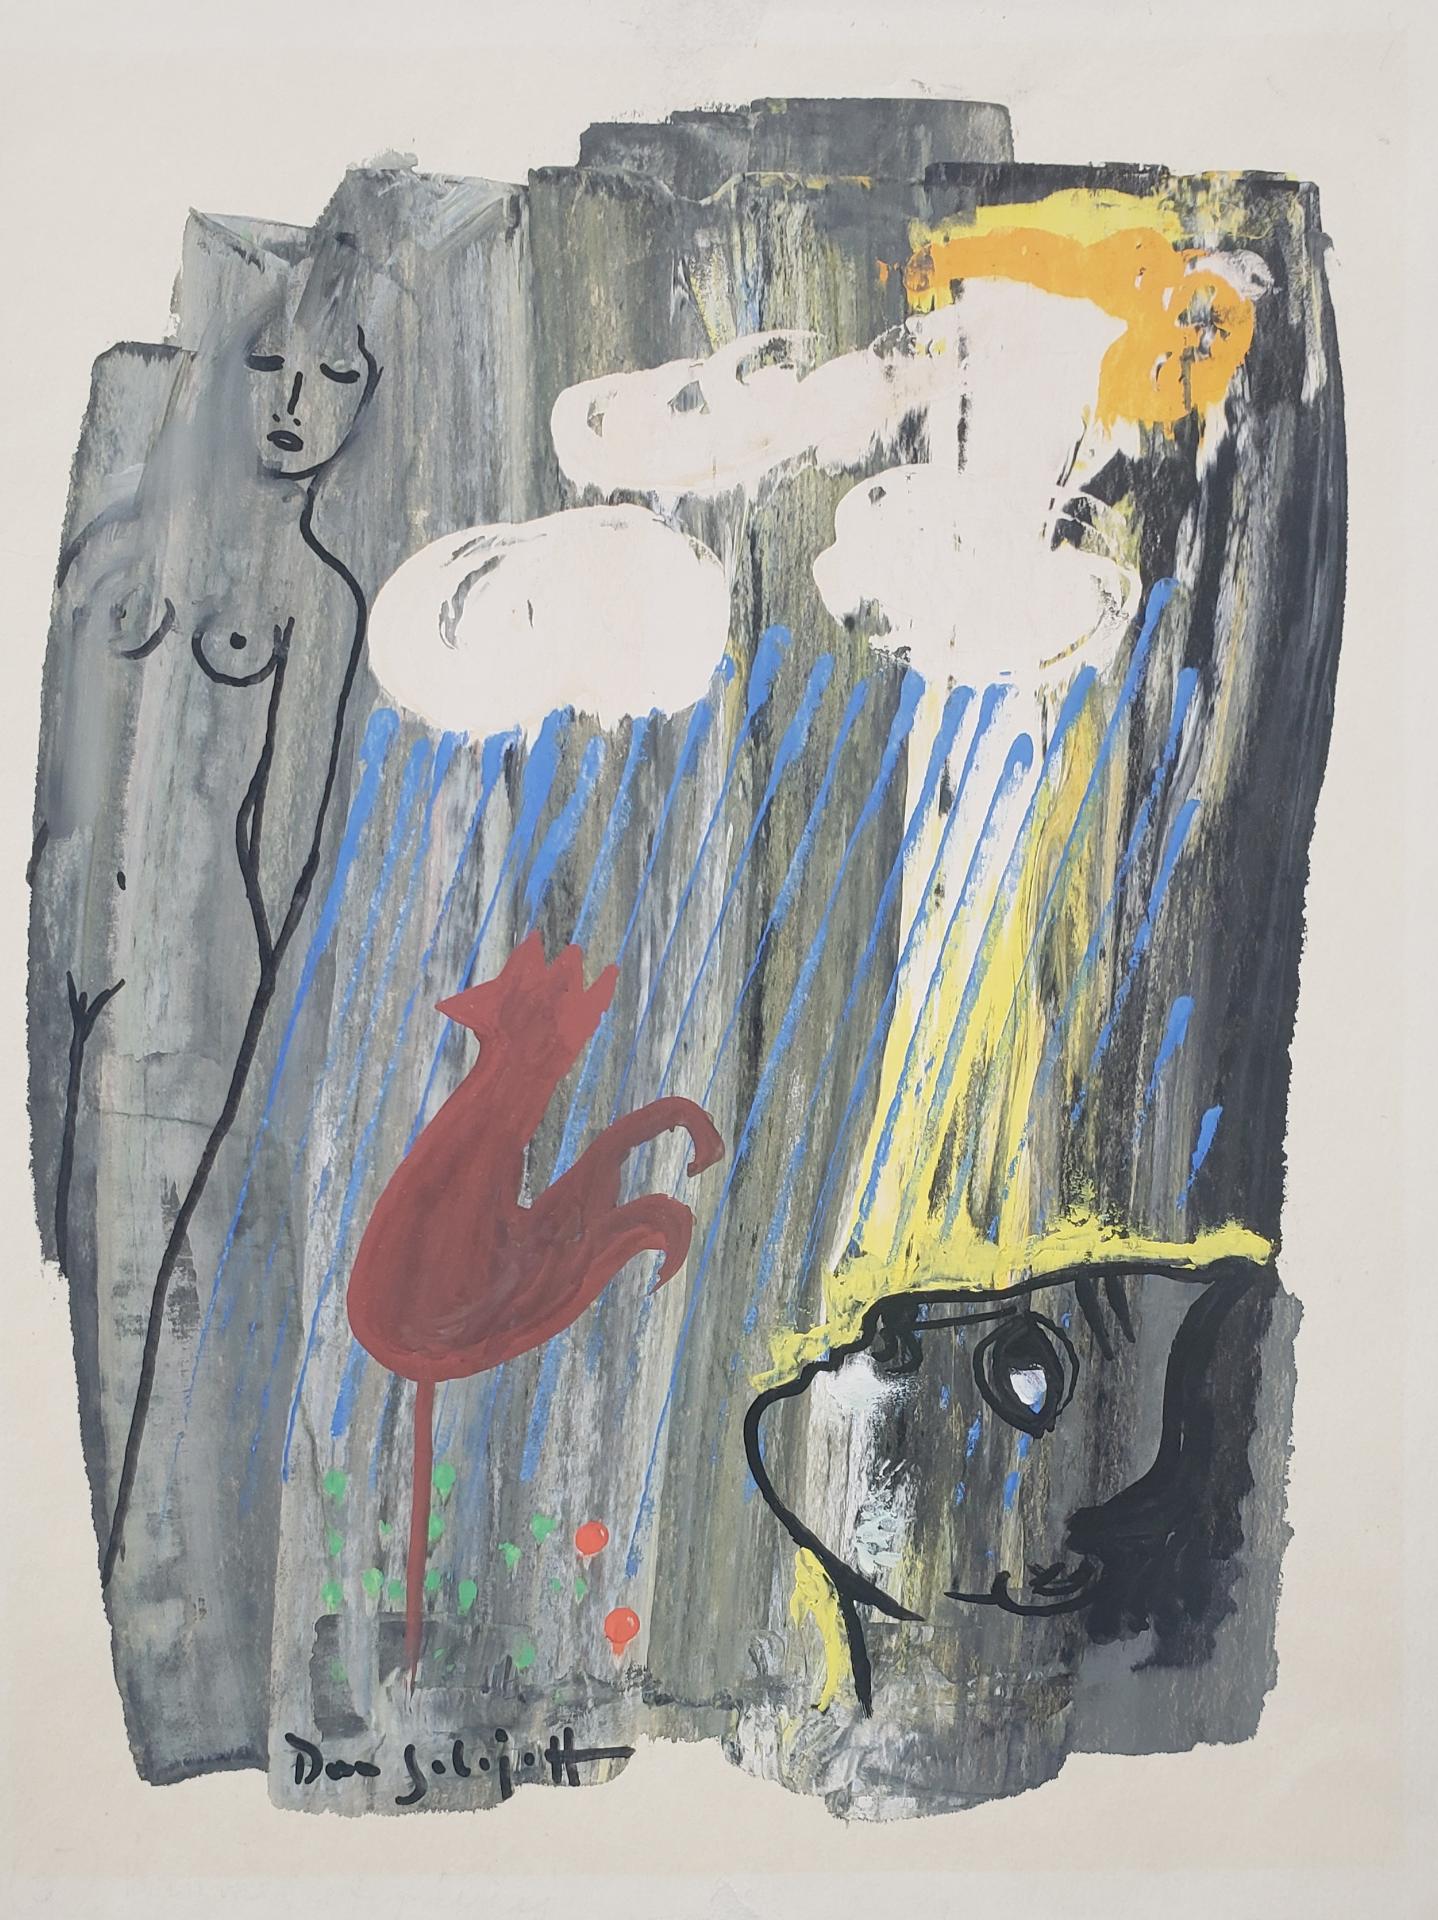 Dan Solojoff - Sans titre / Untitled (extrait de / extract from « Spleen et idéal », Les fleurs du mal, Baudelaire), 1959